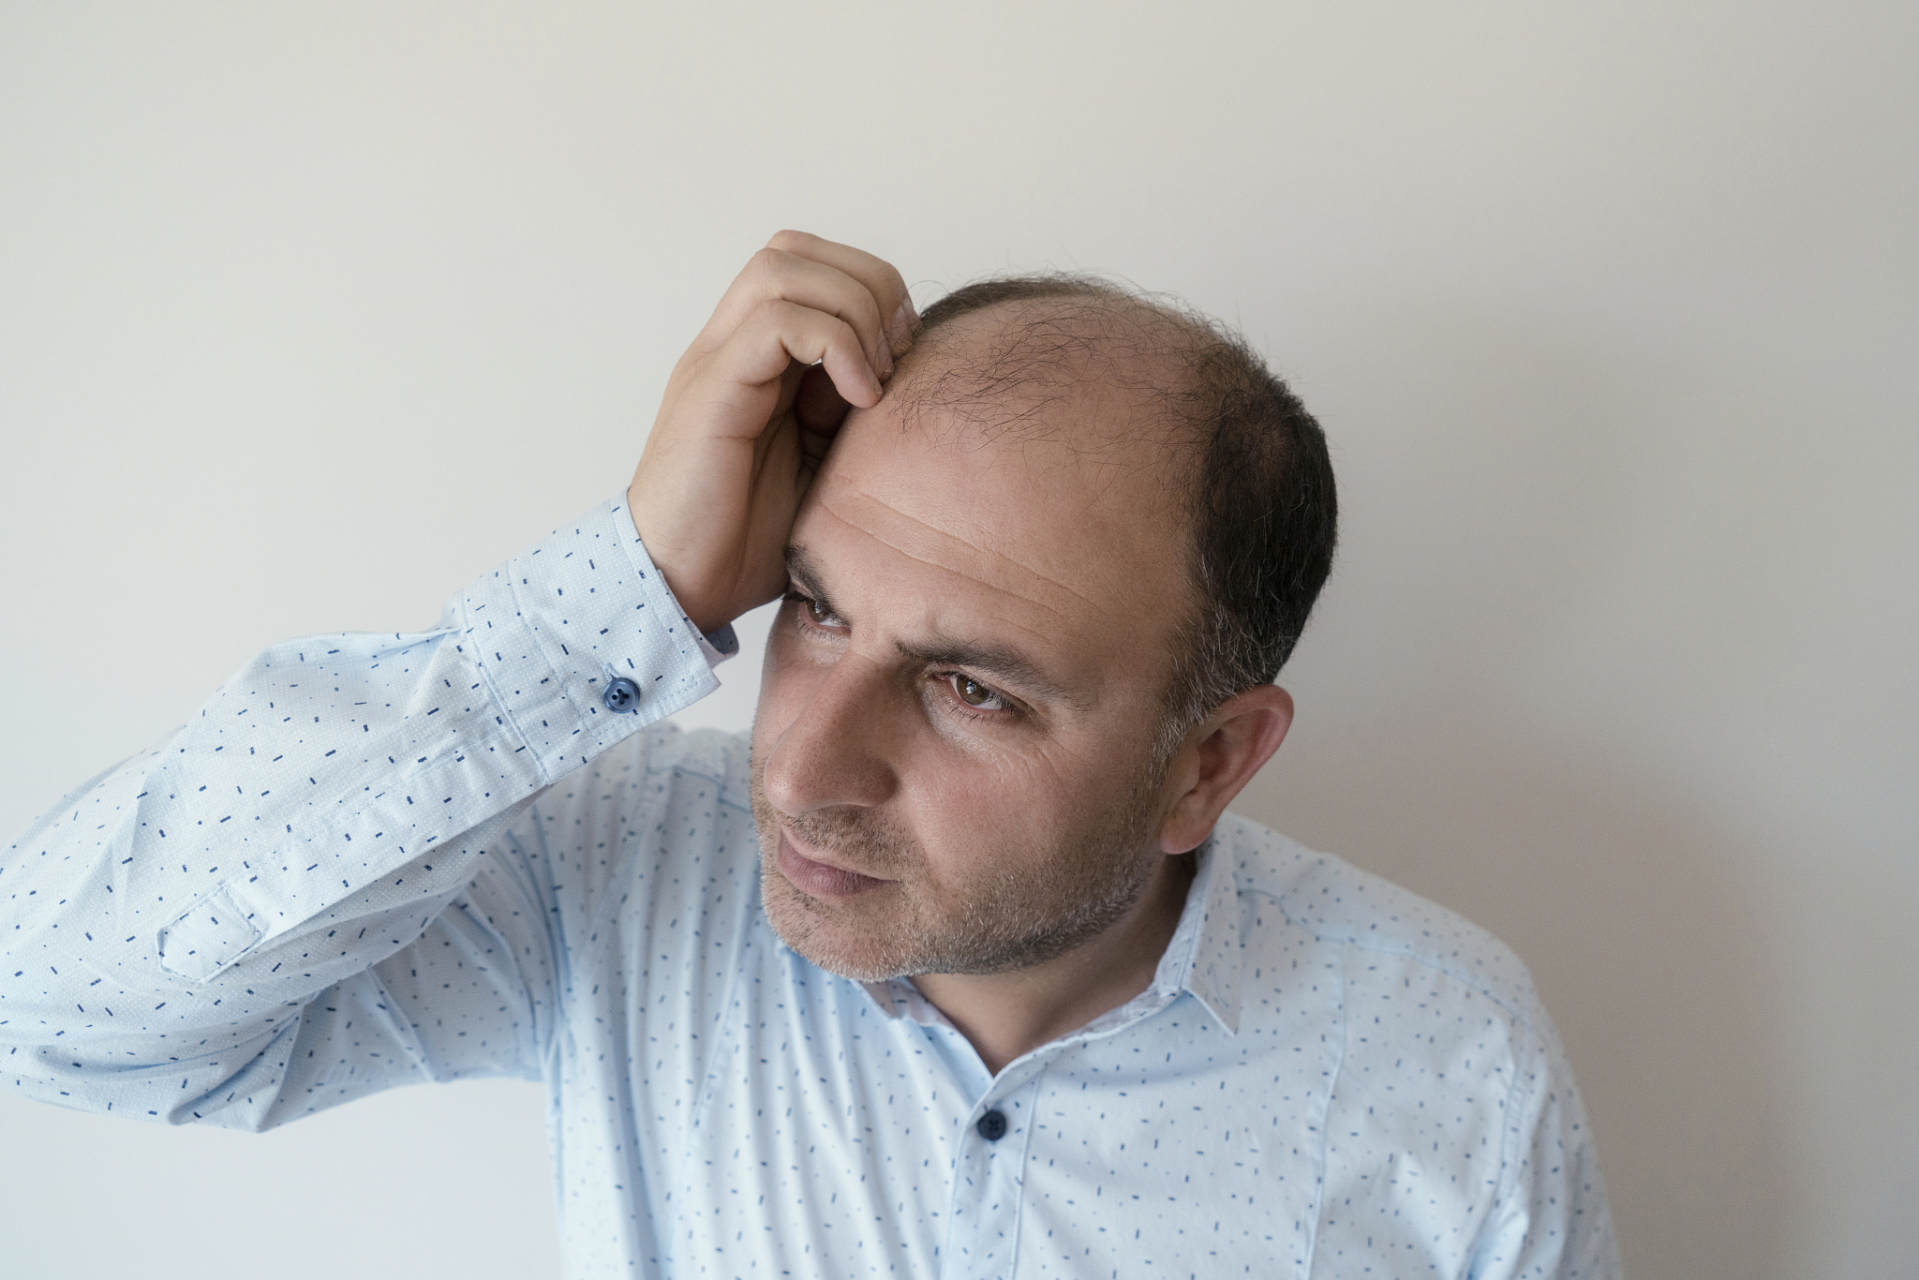 男性脱发 男性脱发(雄性型脱发)是一种常见的头发稀疏或秃顶的现象